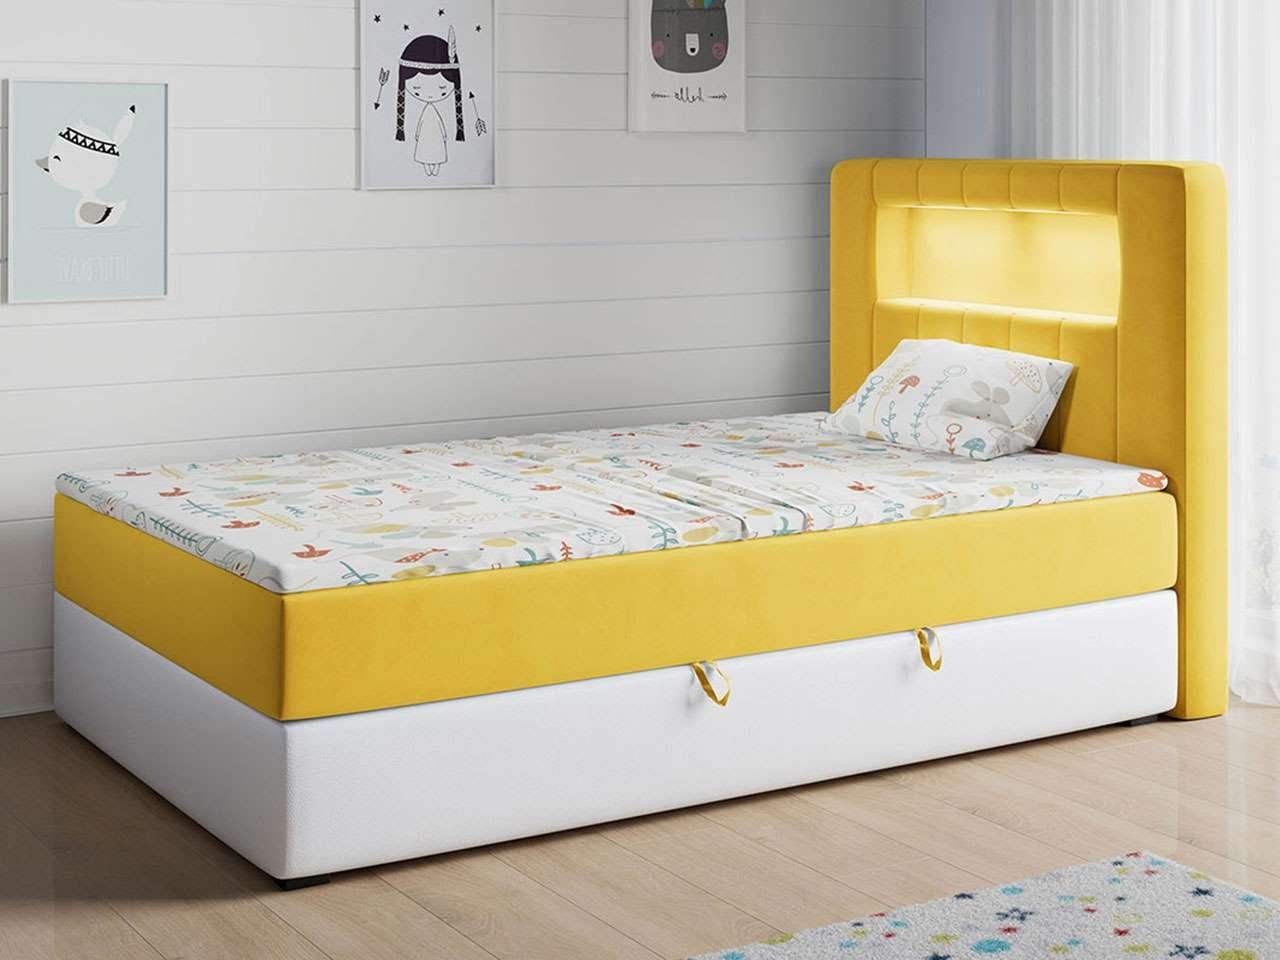 MKS MÖBEL Kinderbett GOLD 1 JUNIOR, Funktionsbett Bett Boxspringbetten für Kinderzimmer, Einzelbetten Gelb und Weiß